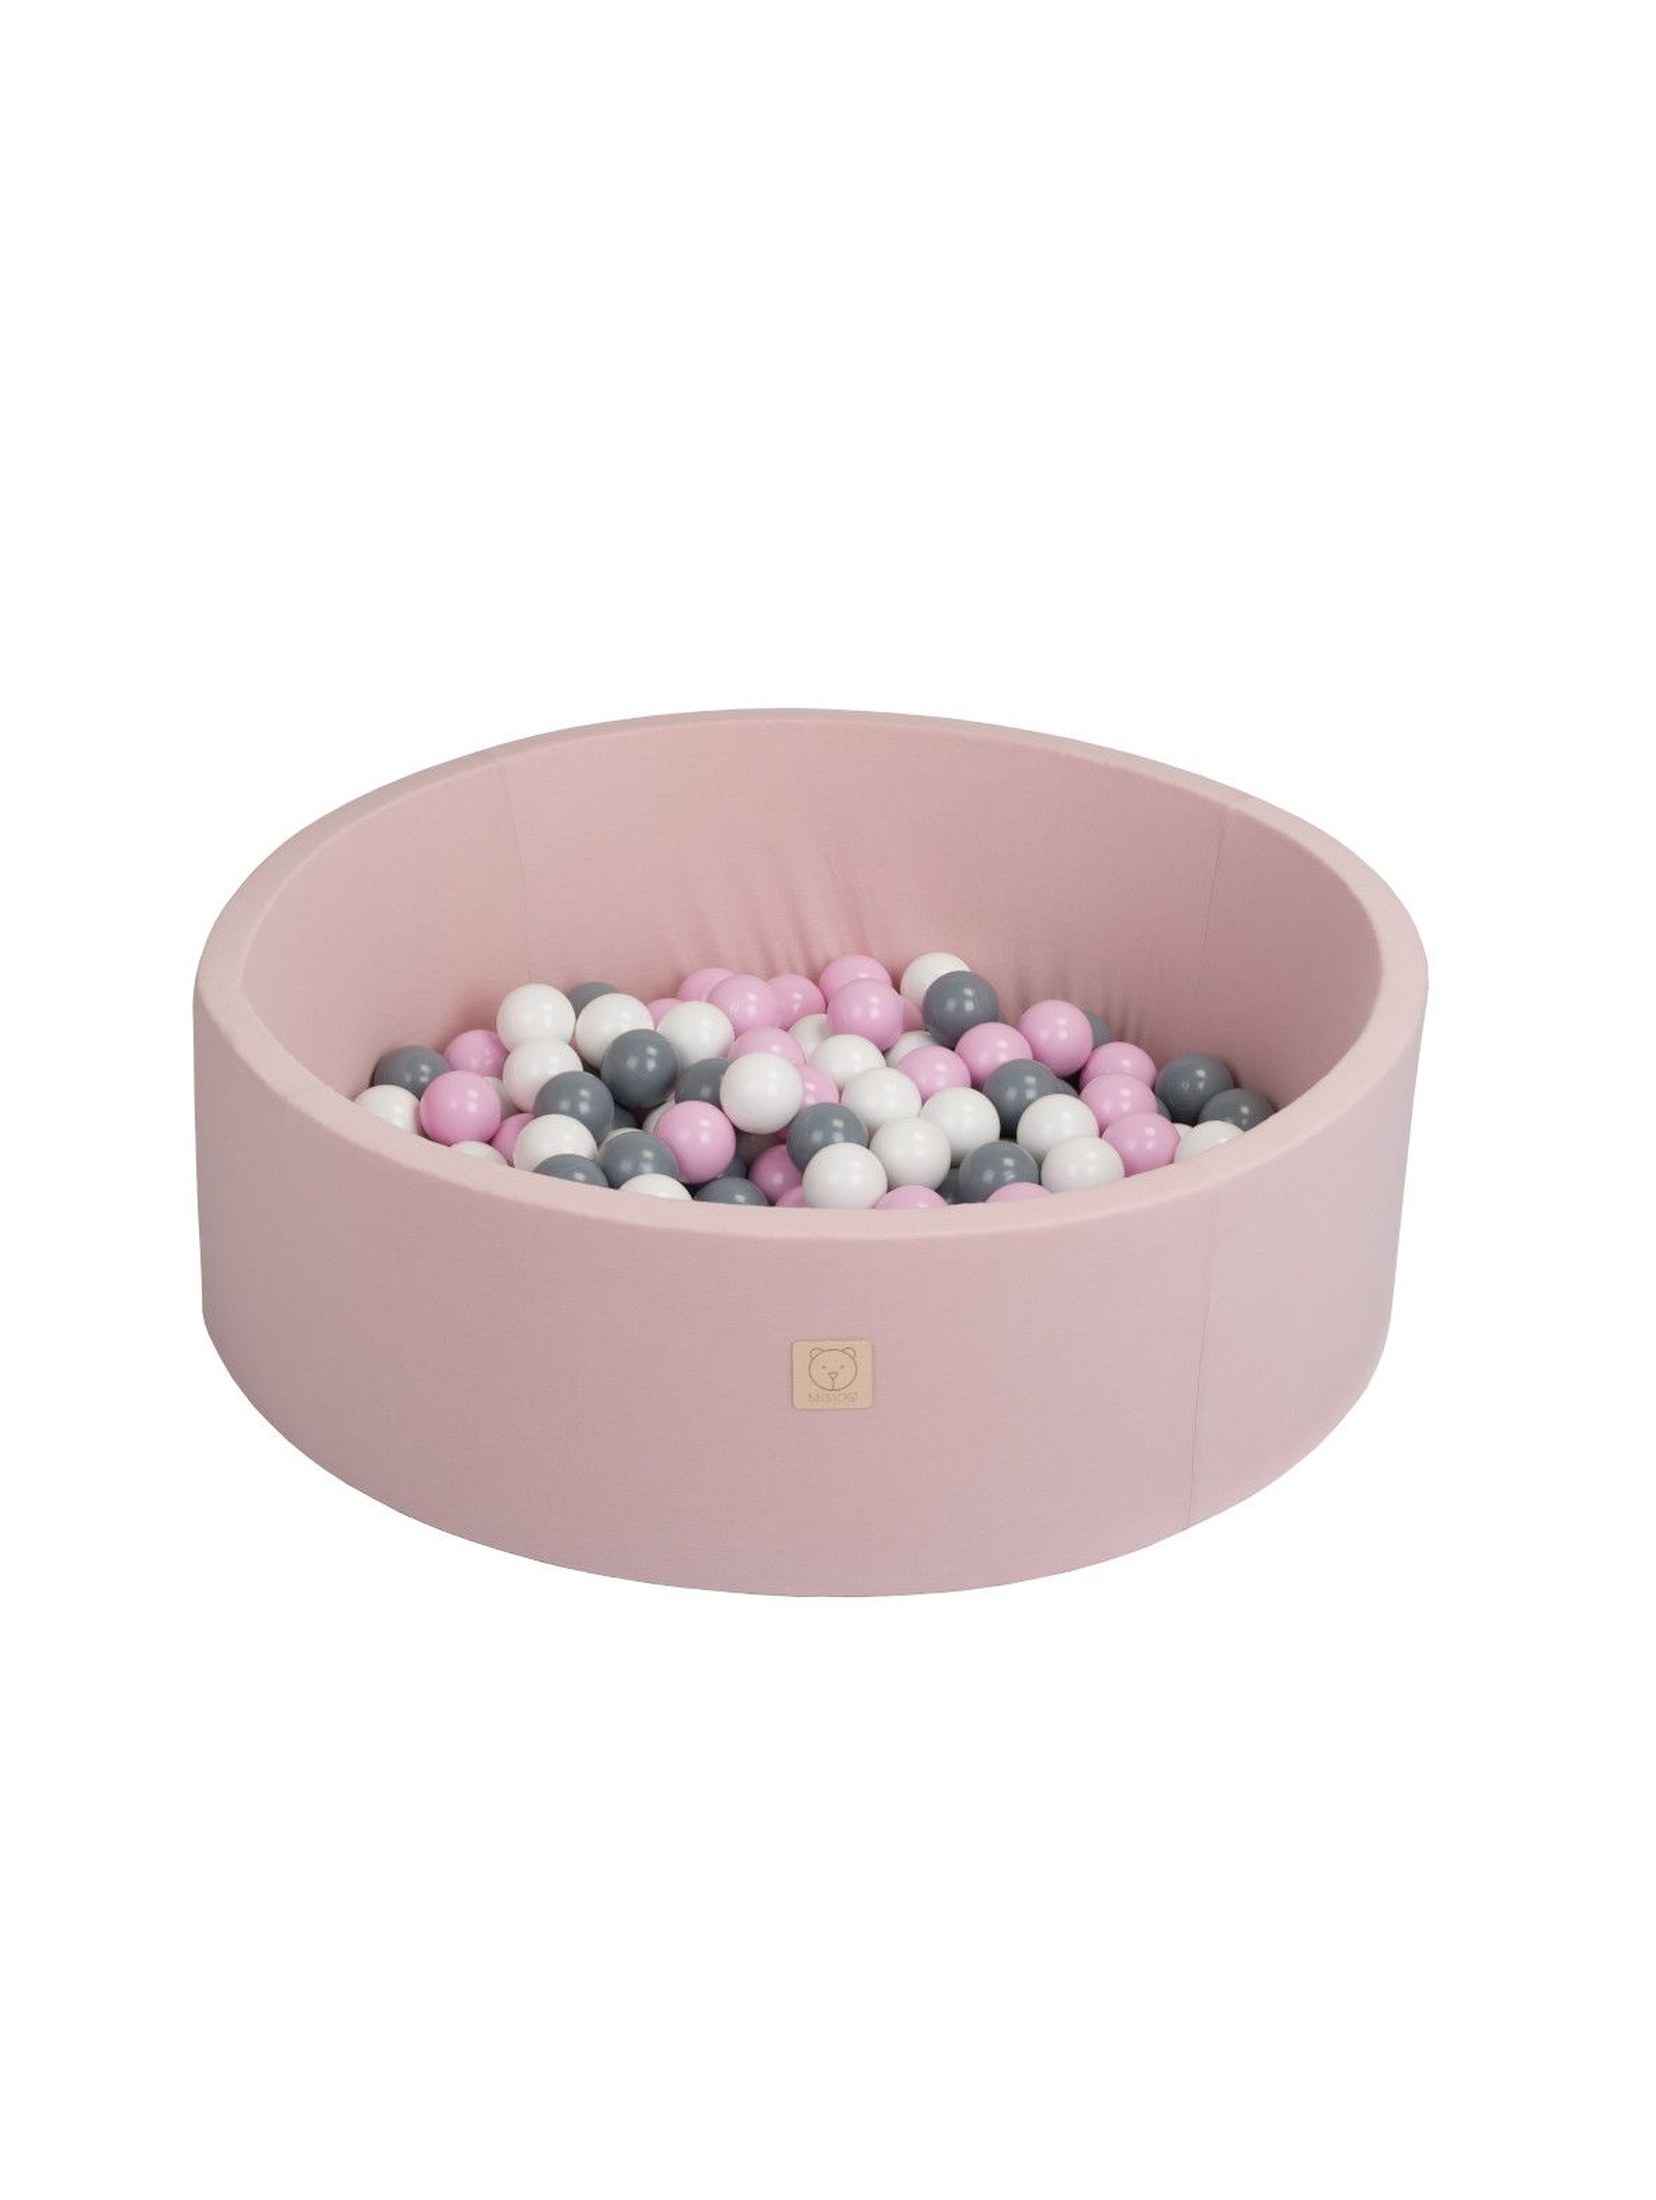 Suchy basen z kulkami różowy - piłki rożowe/szare/białe